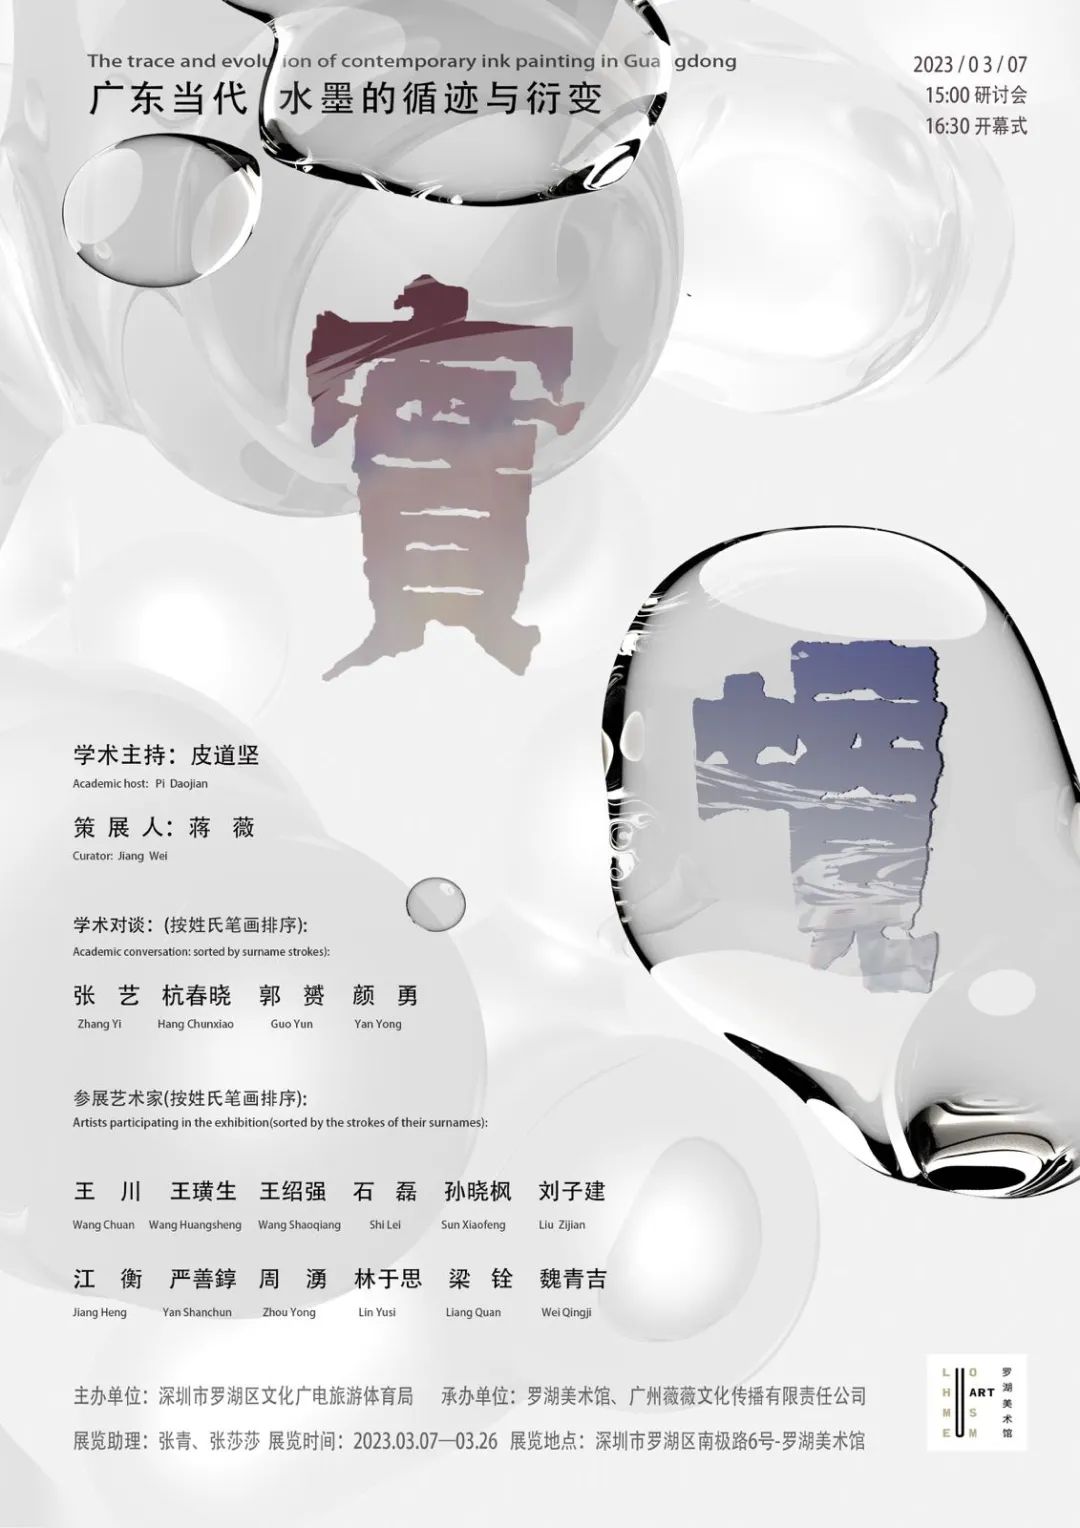 著名画家石磊参展“实境——广东当代水墨的循迹与衍变”，解构水墨语言